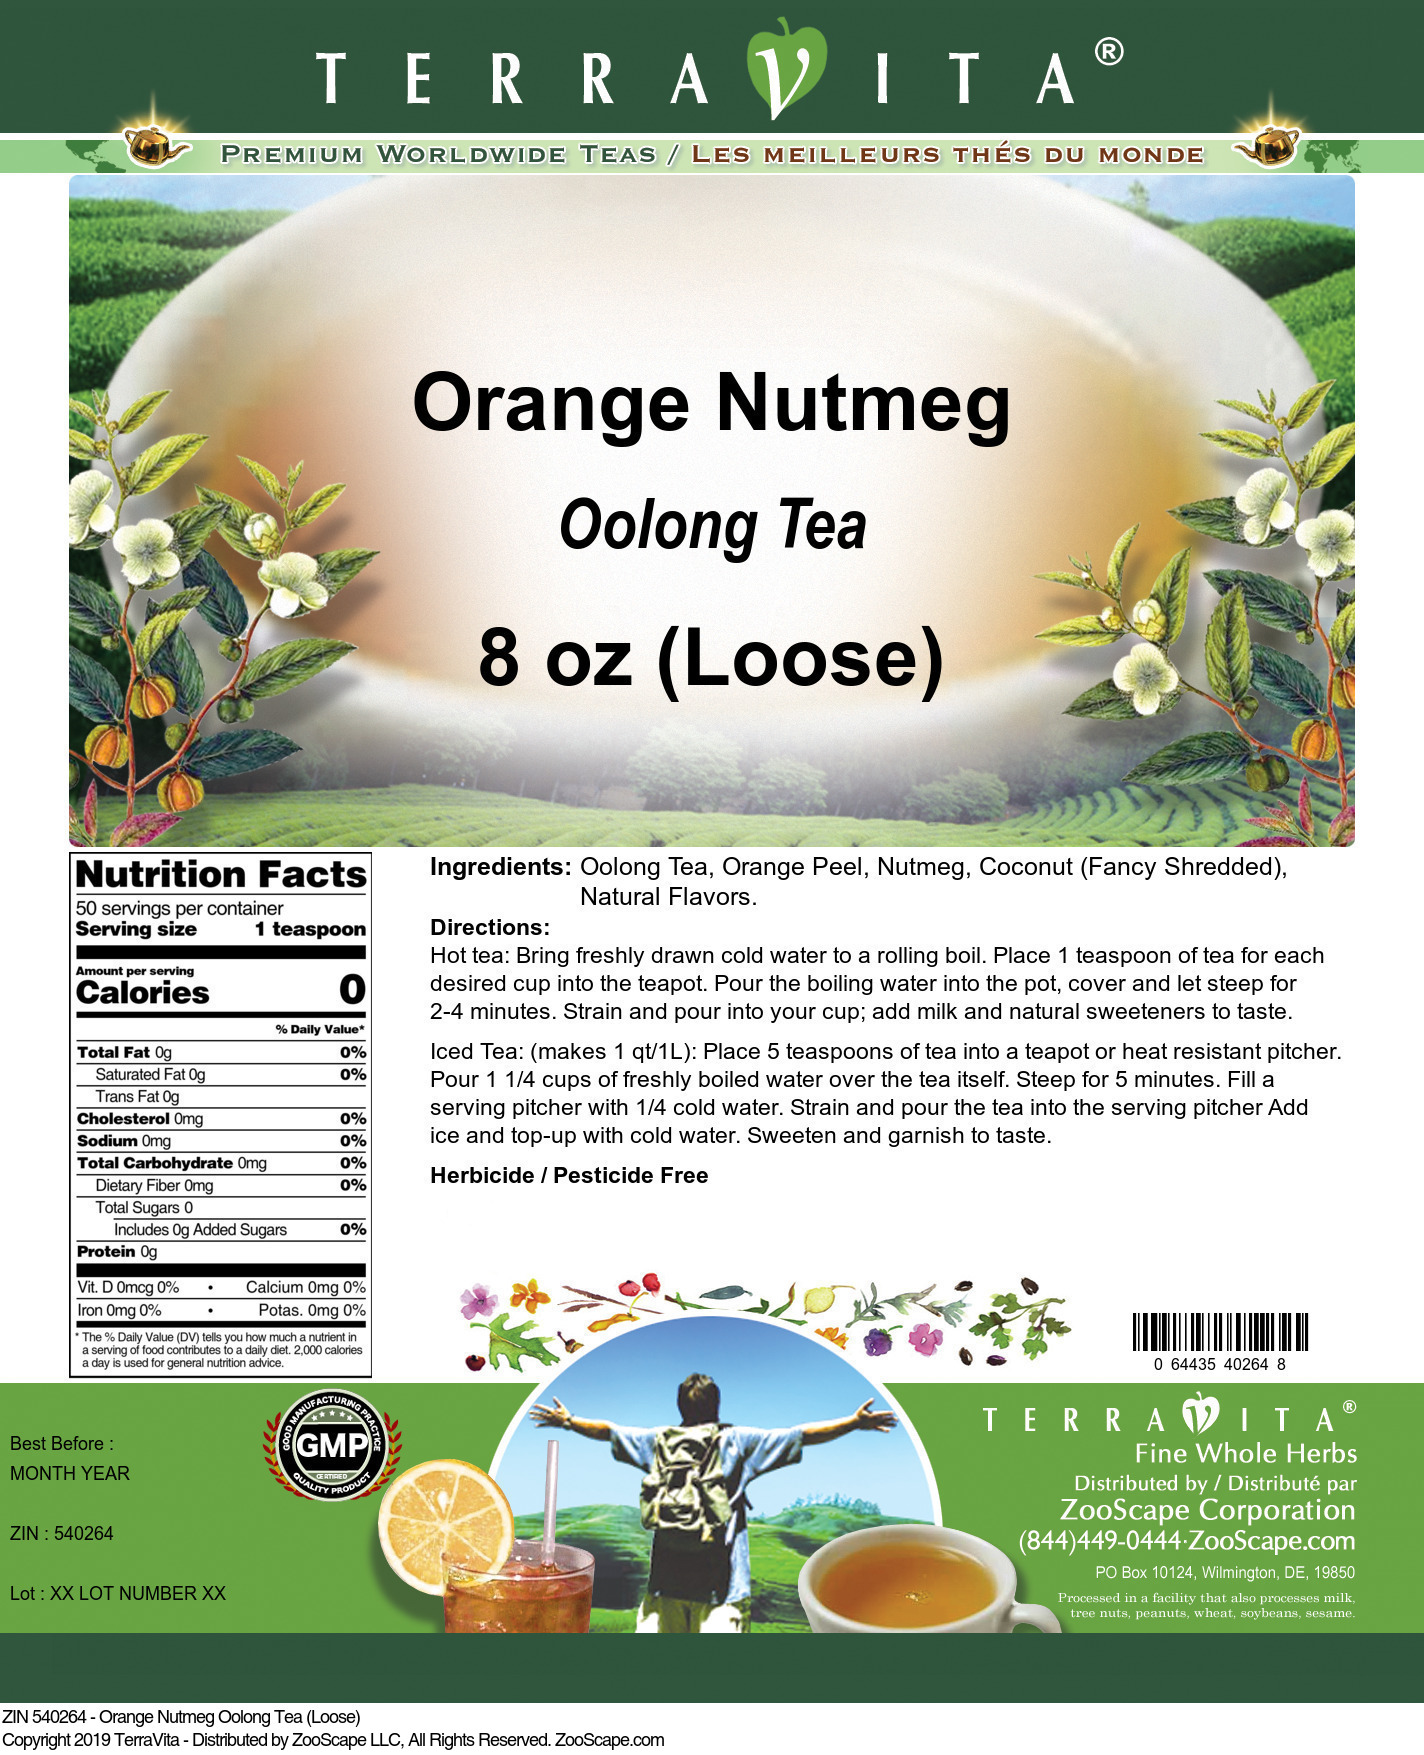 Orange Nutmeg Oolong Tea (Loose) - Label